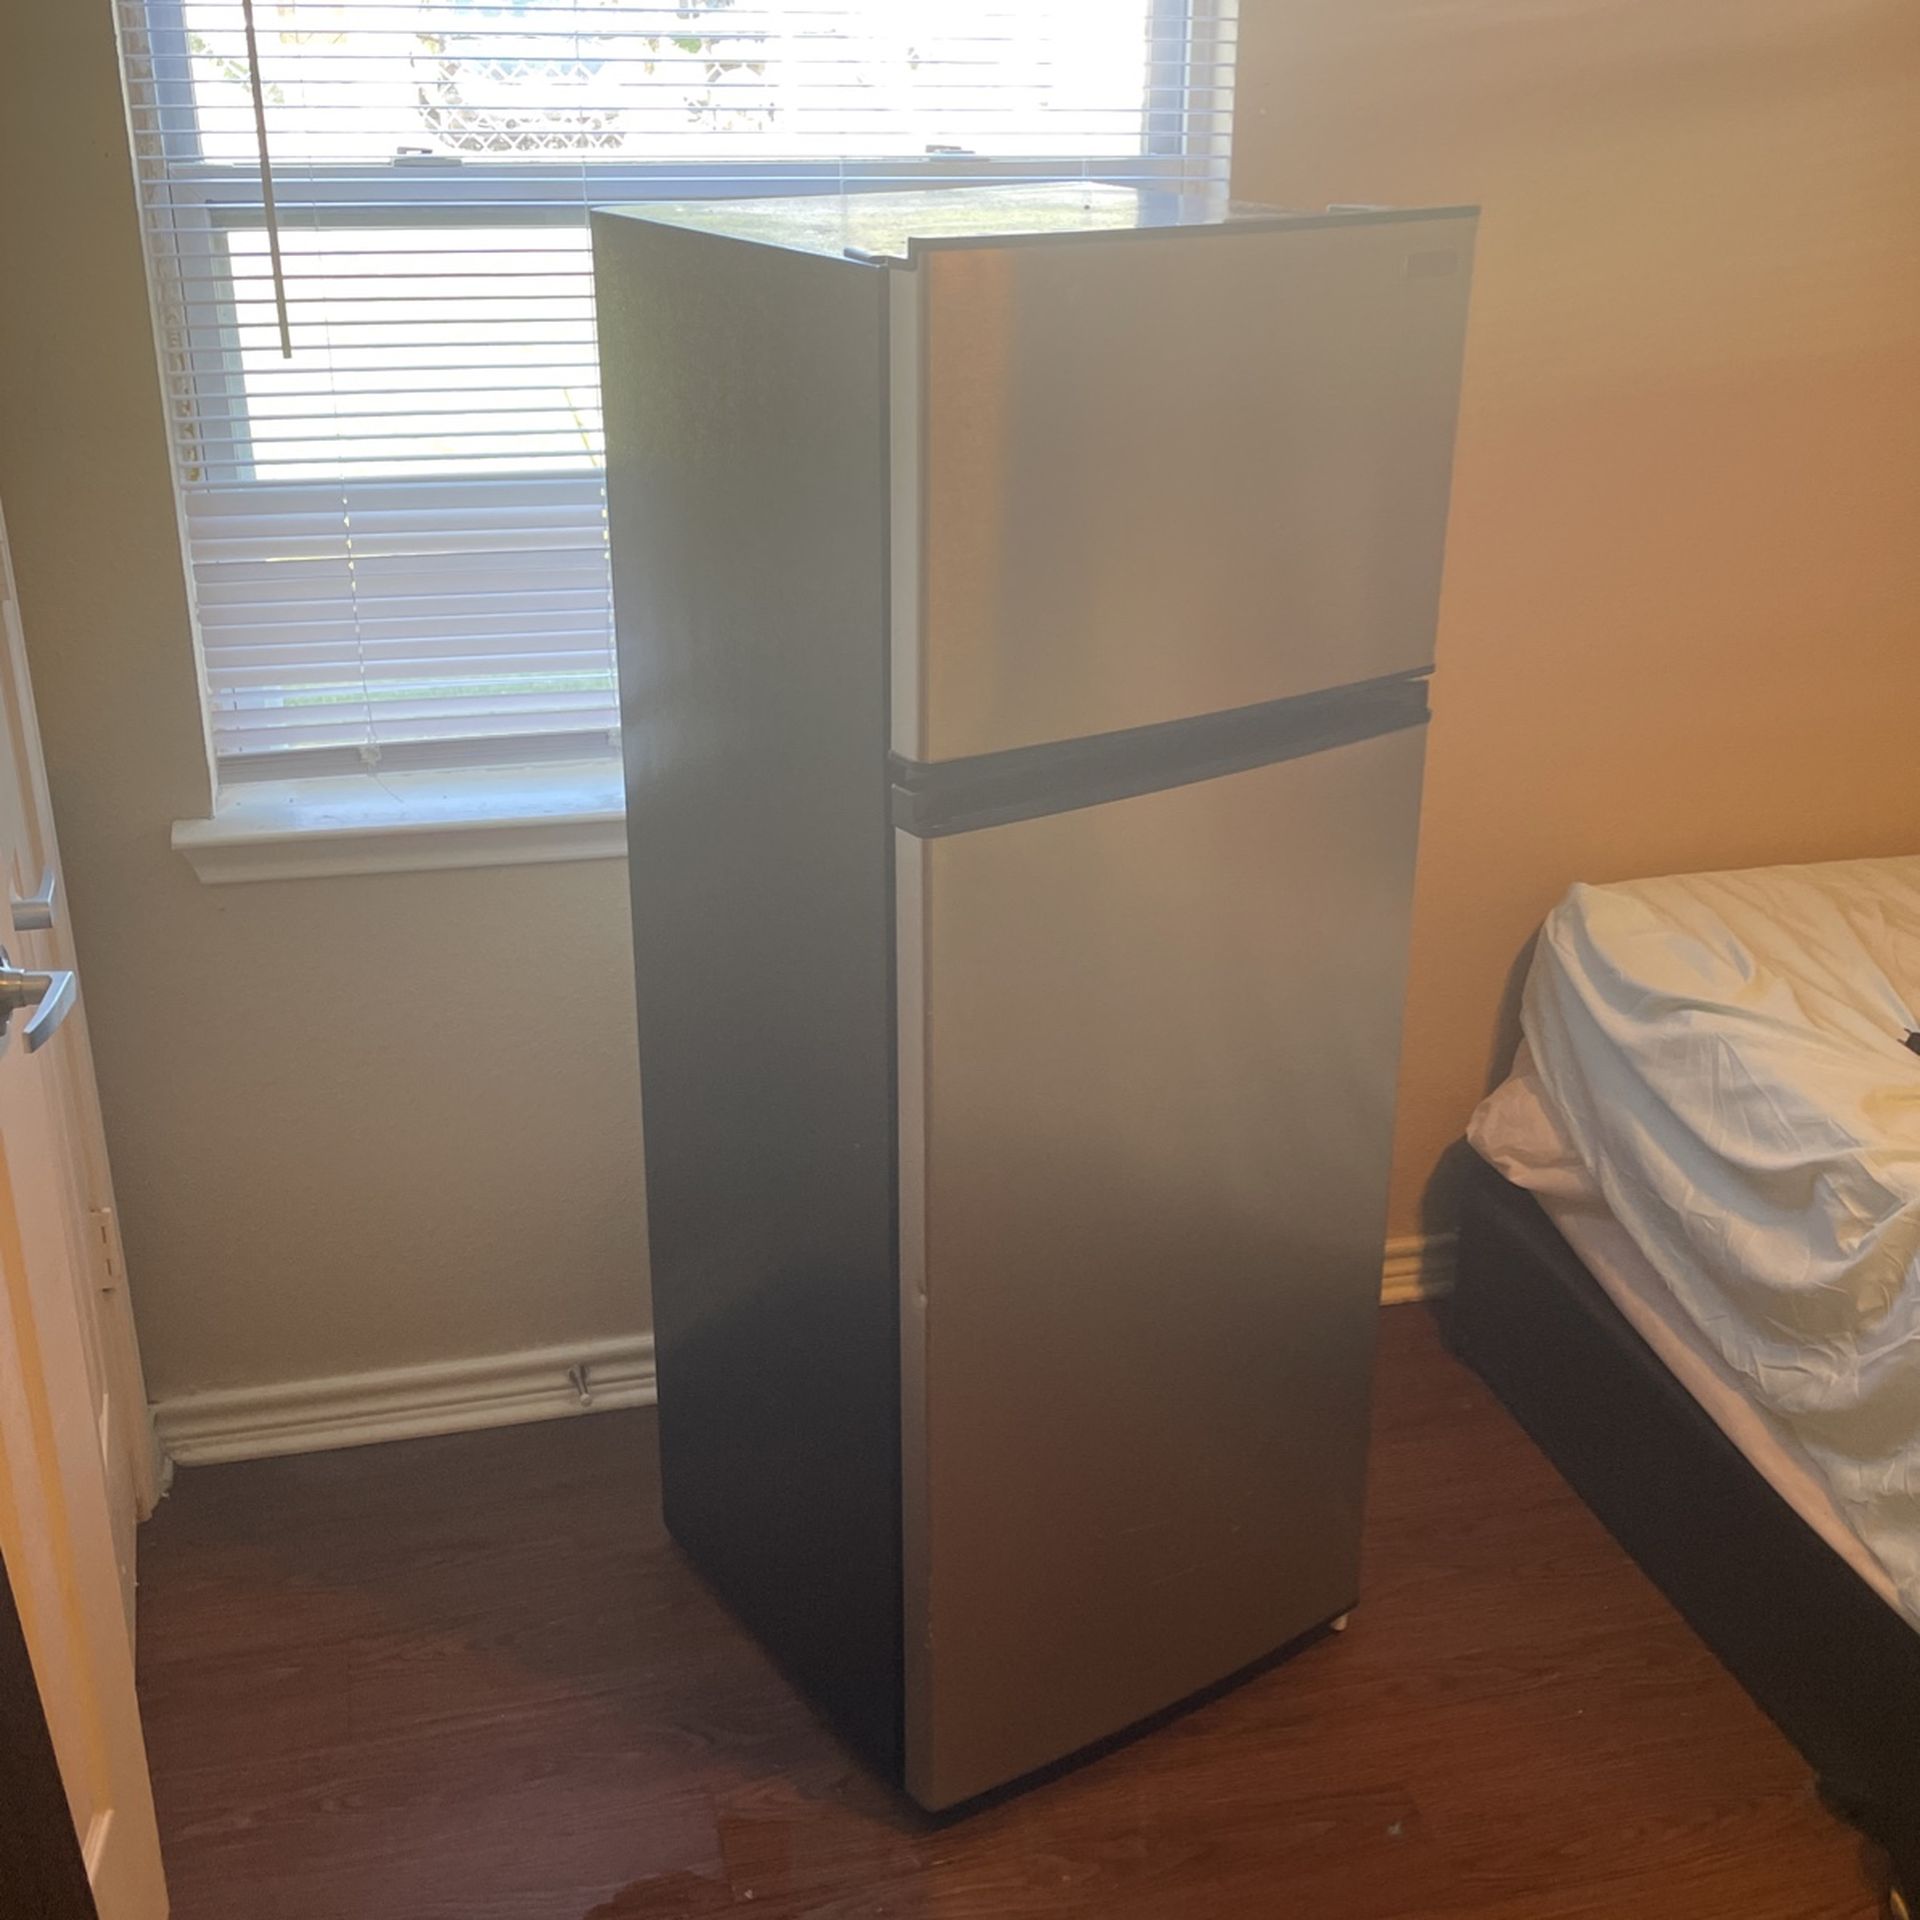 Medium Grey Vissani Refrigerator 